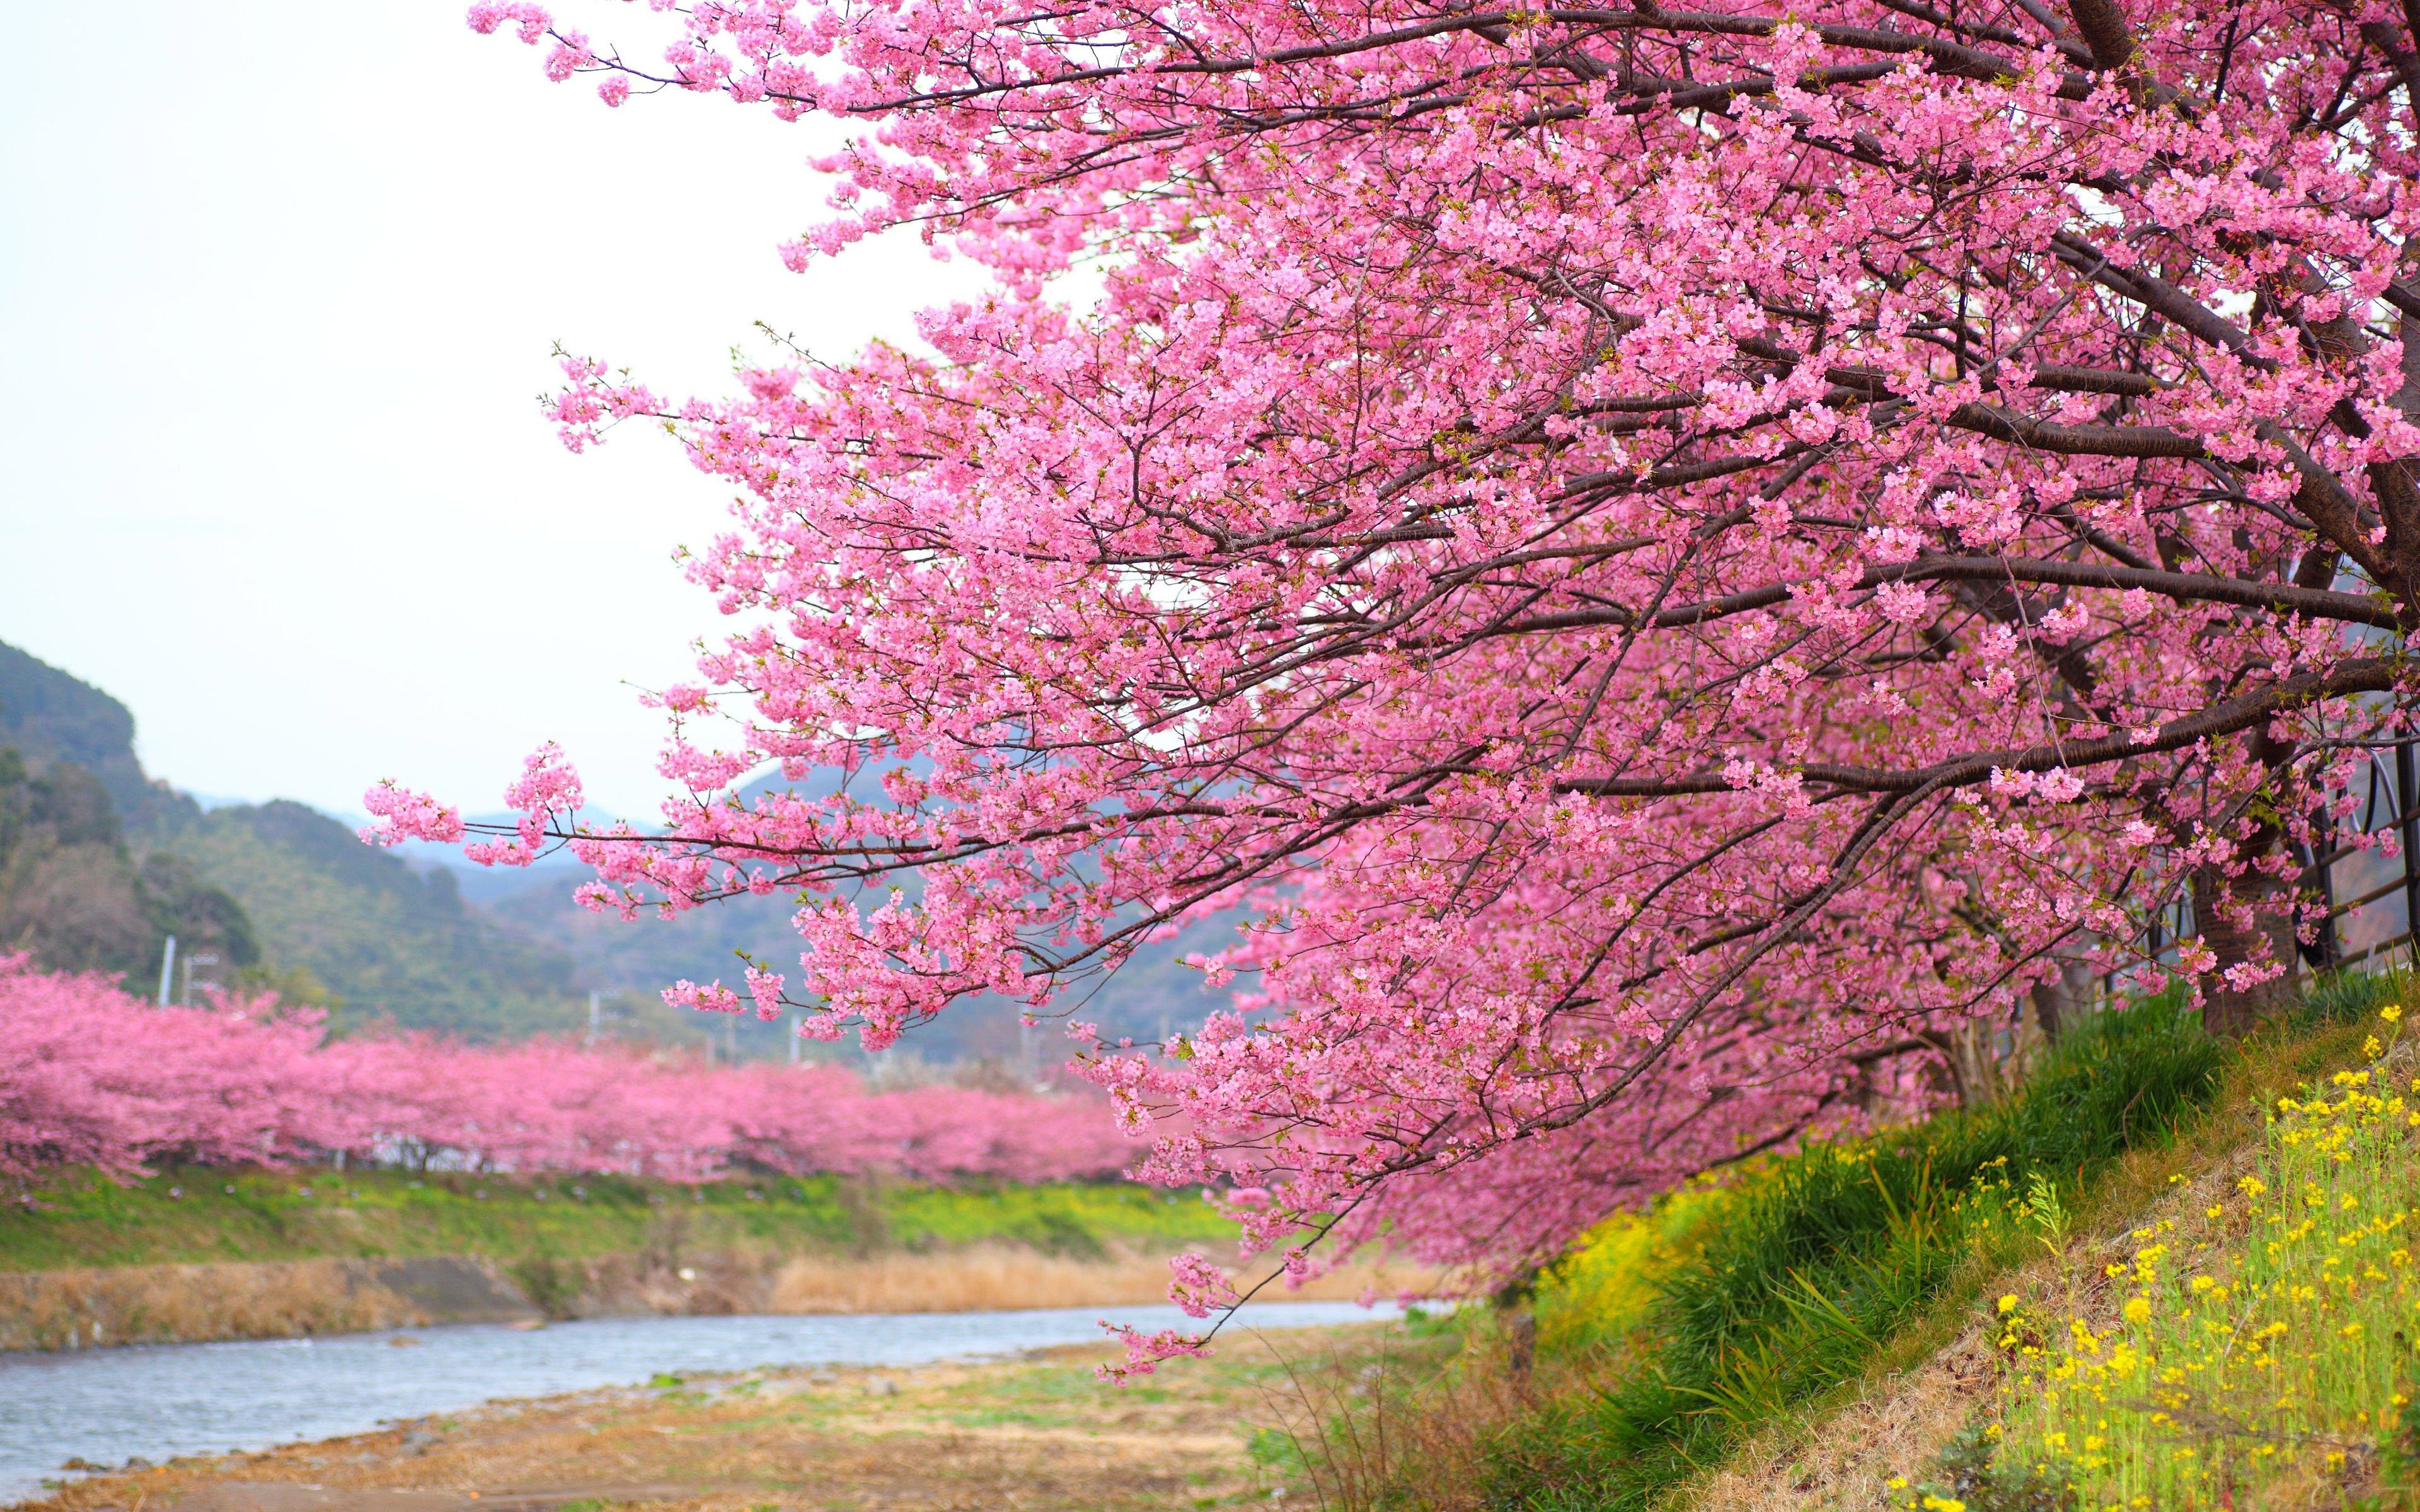 Pink Flowers Blooming Cherry Tree In Kawazu Japan Wallpapers Hd For Desktop 3840x2400 : Wallpapers13